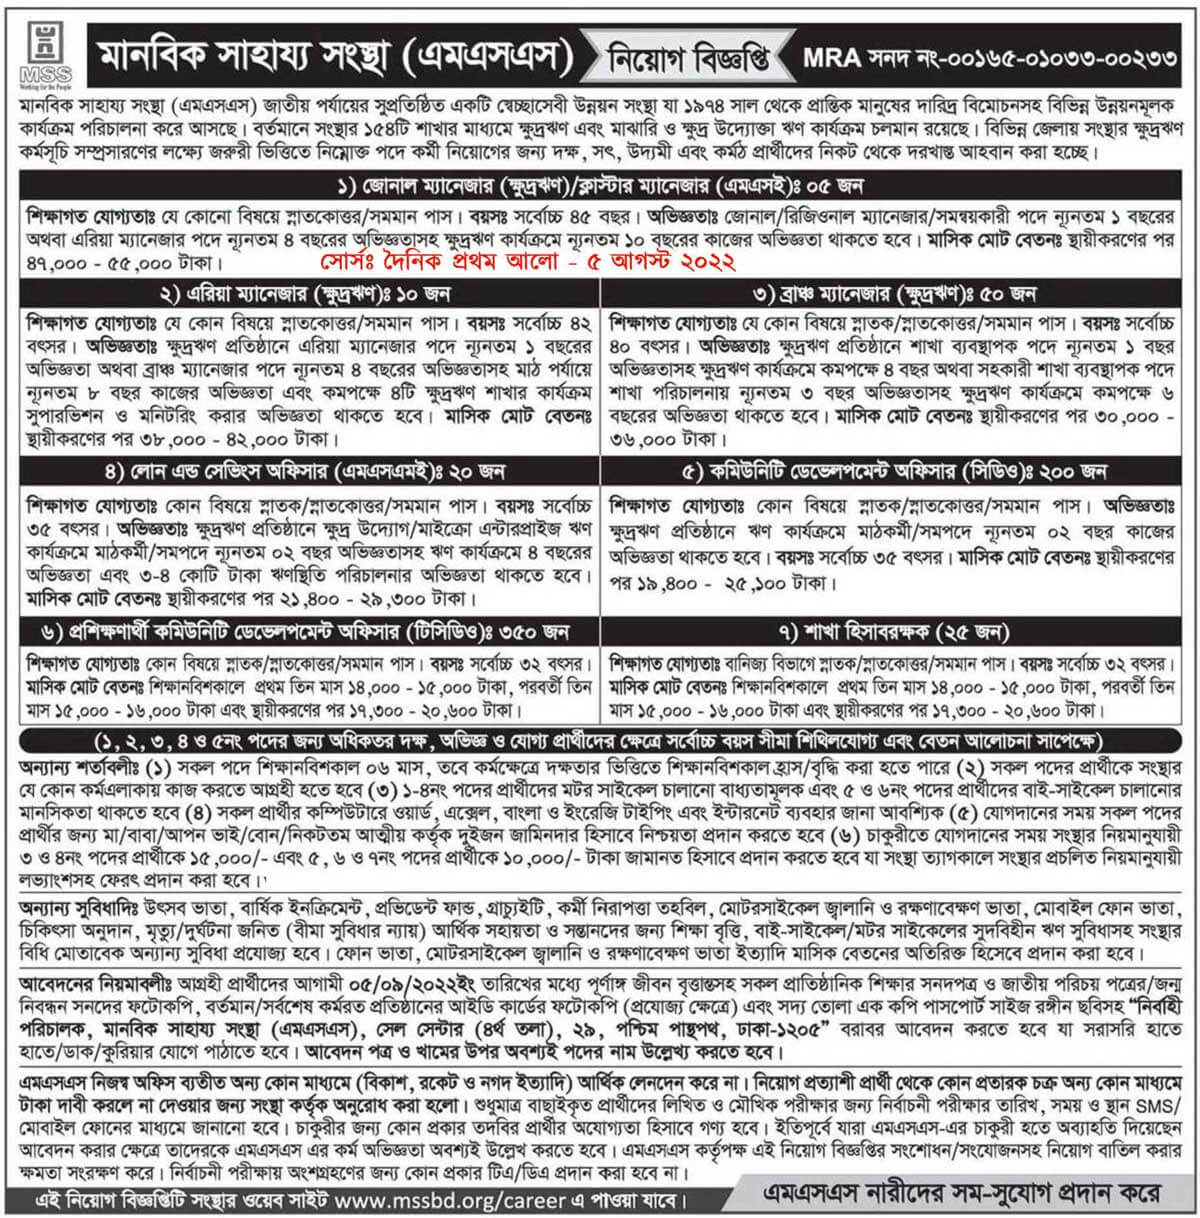 Manabik Shahajya Sangstha MSS Job Circular